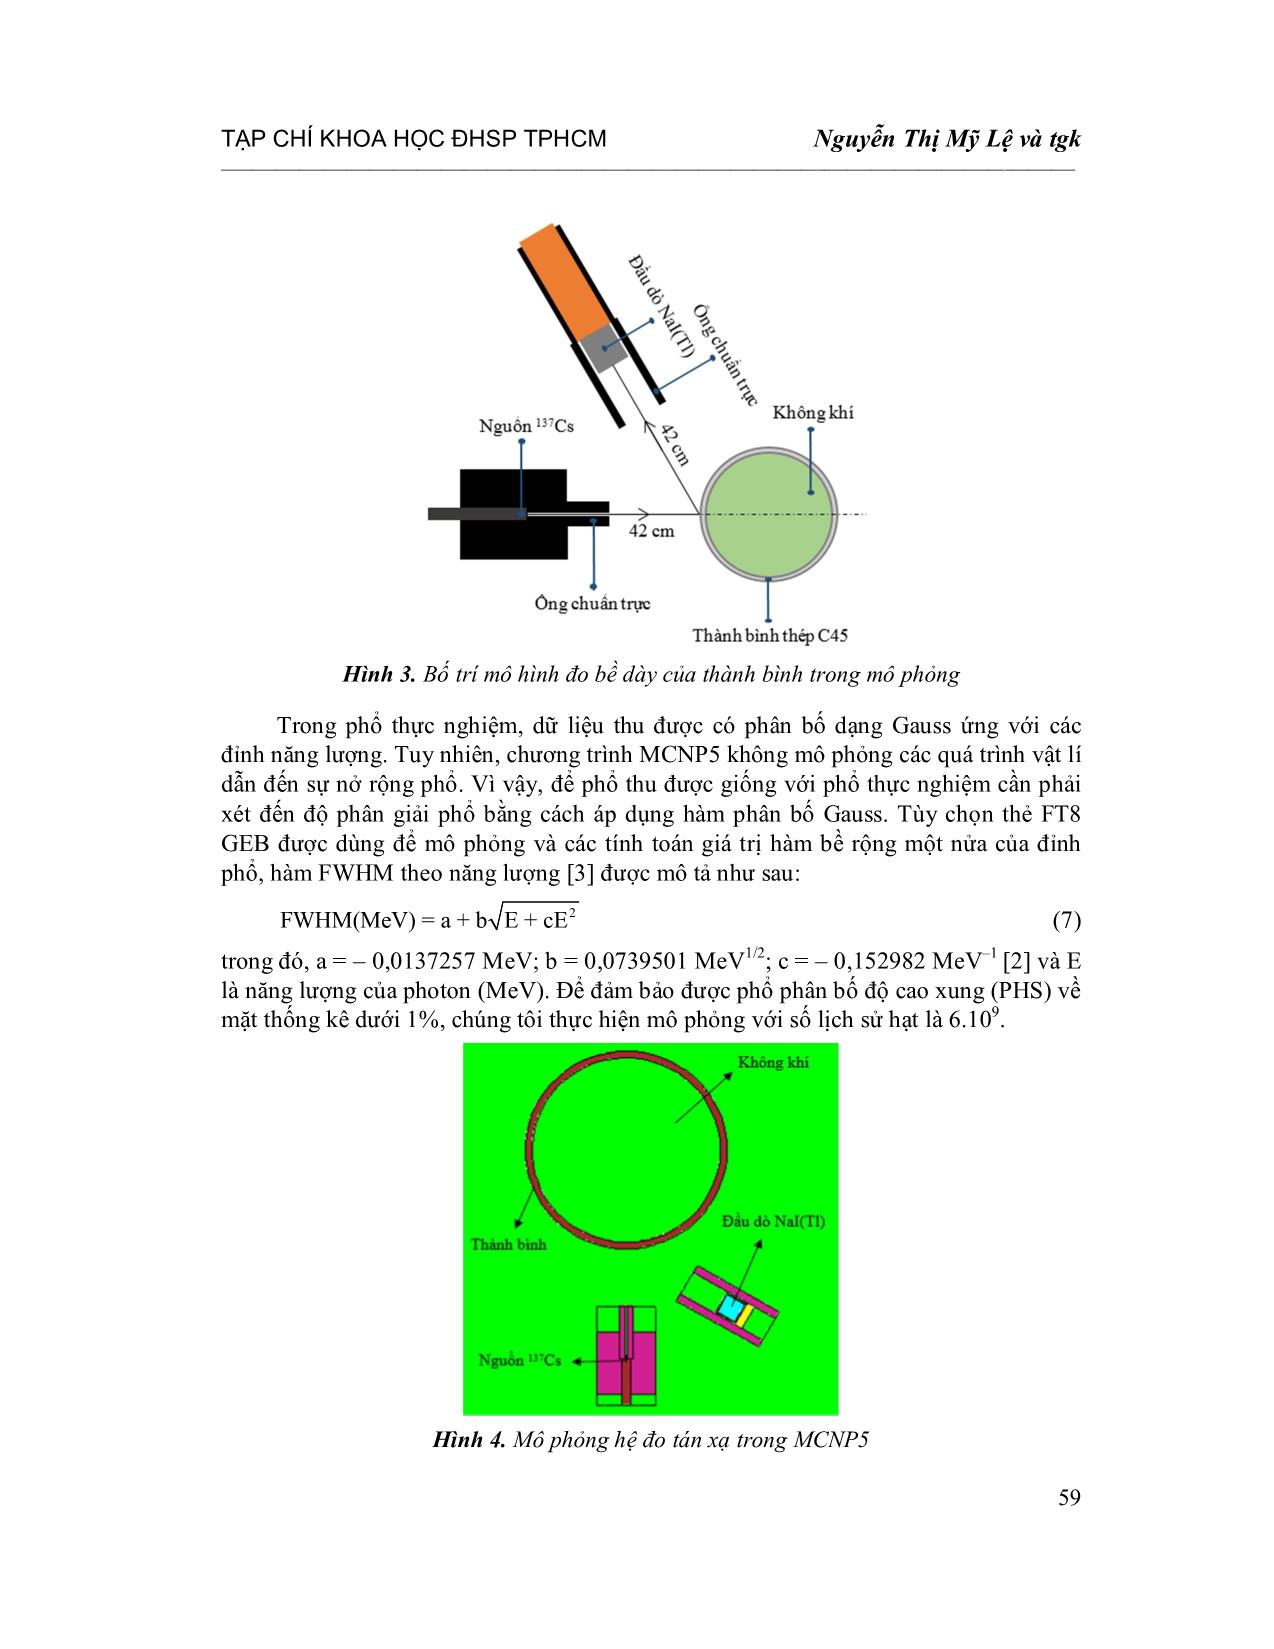 Áp dụng kĩ thuật Gamma tán xạ ngược để xác định độ dày của thành bình bằng phương pháp Monte Carlo trang 5